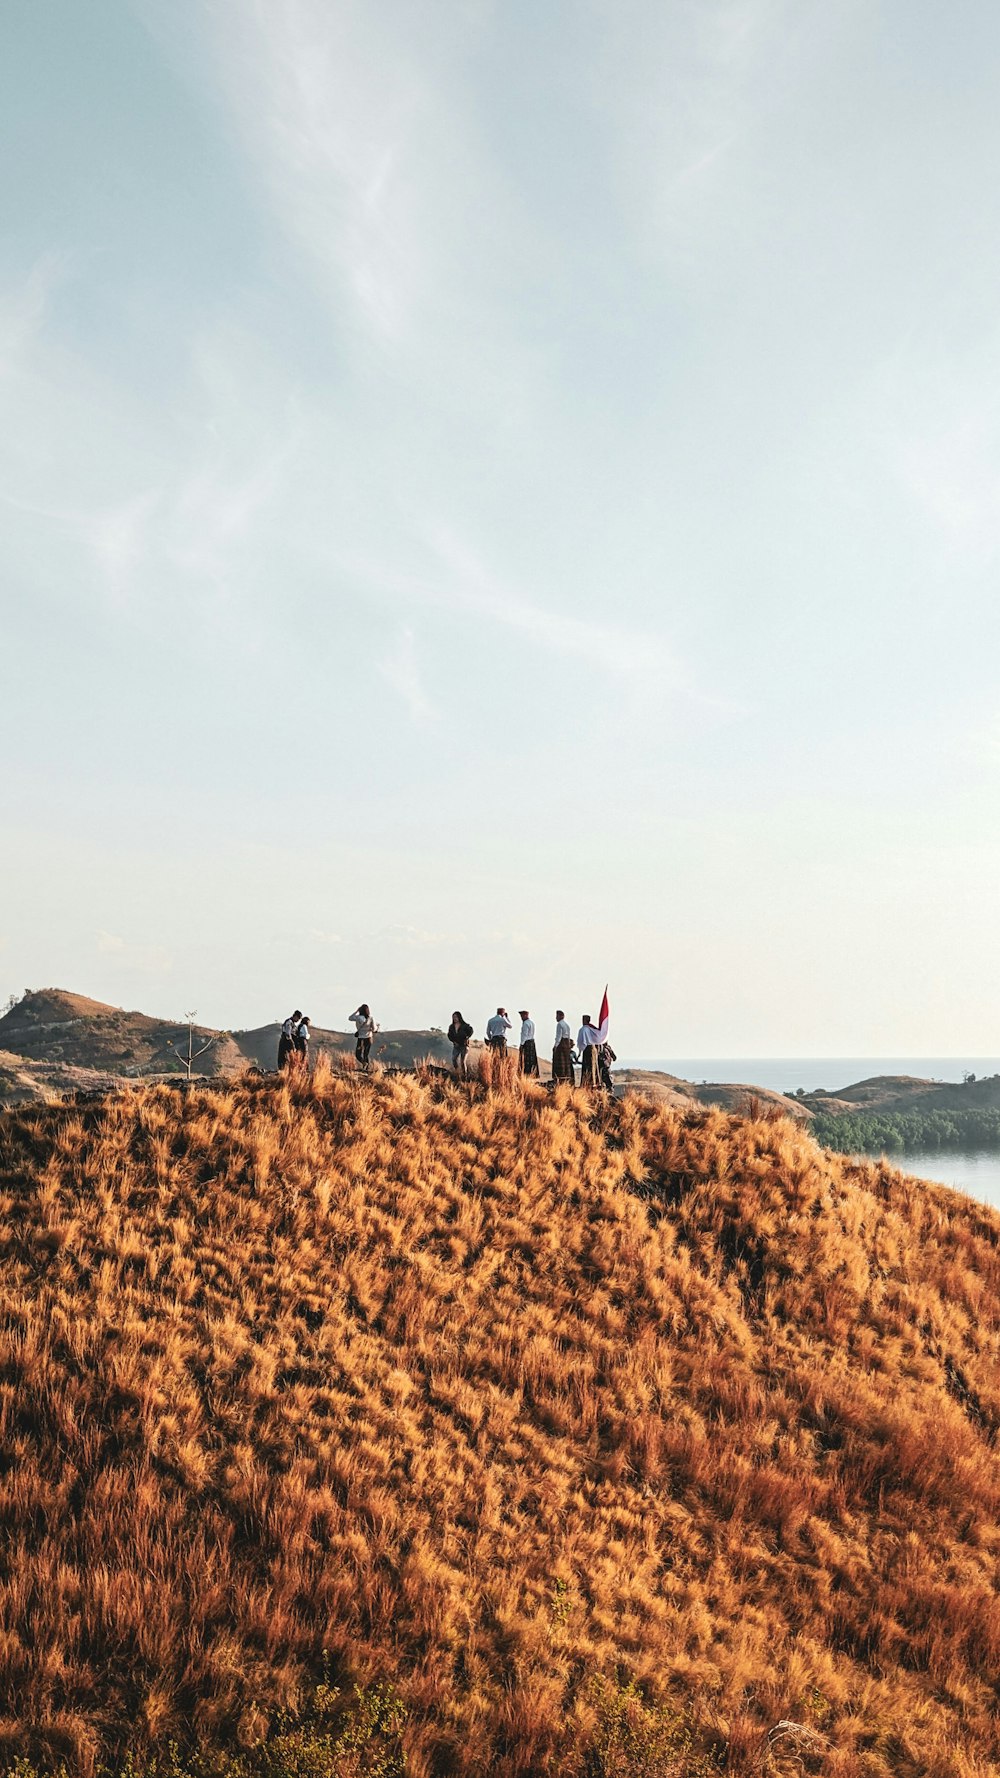 Un grupo de personas de pie en la cima de una colina cubierta de hierba